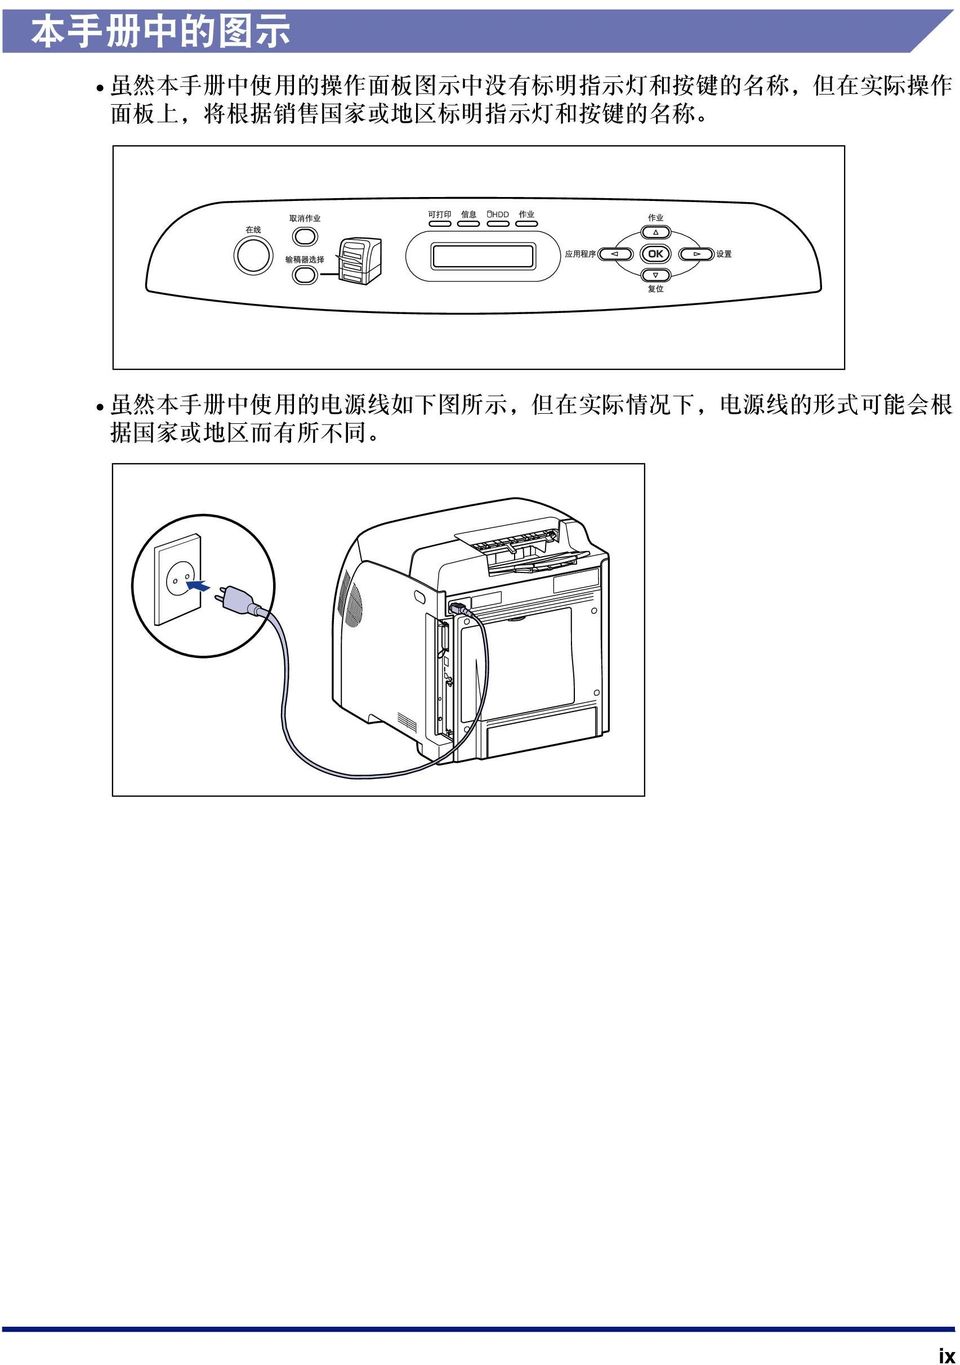 指 示 灯 和 按 键 的 名 称 HDD 虽 然 本 手 册 中 使 用 的 电 源 线 如 下 图 所 示,